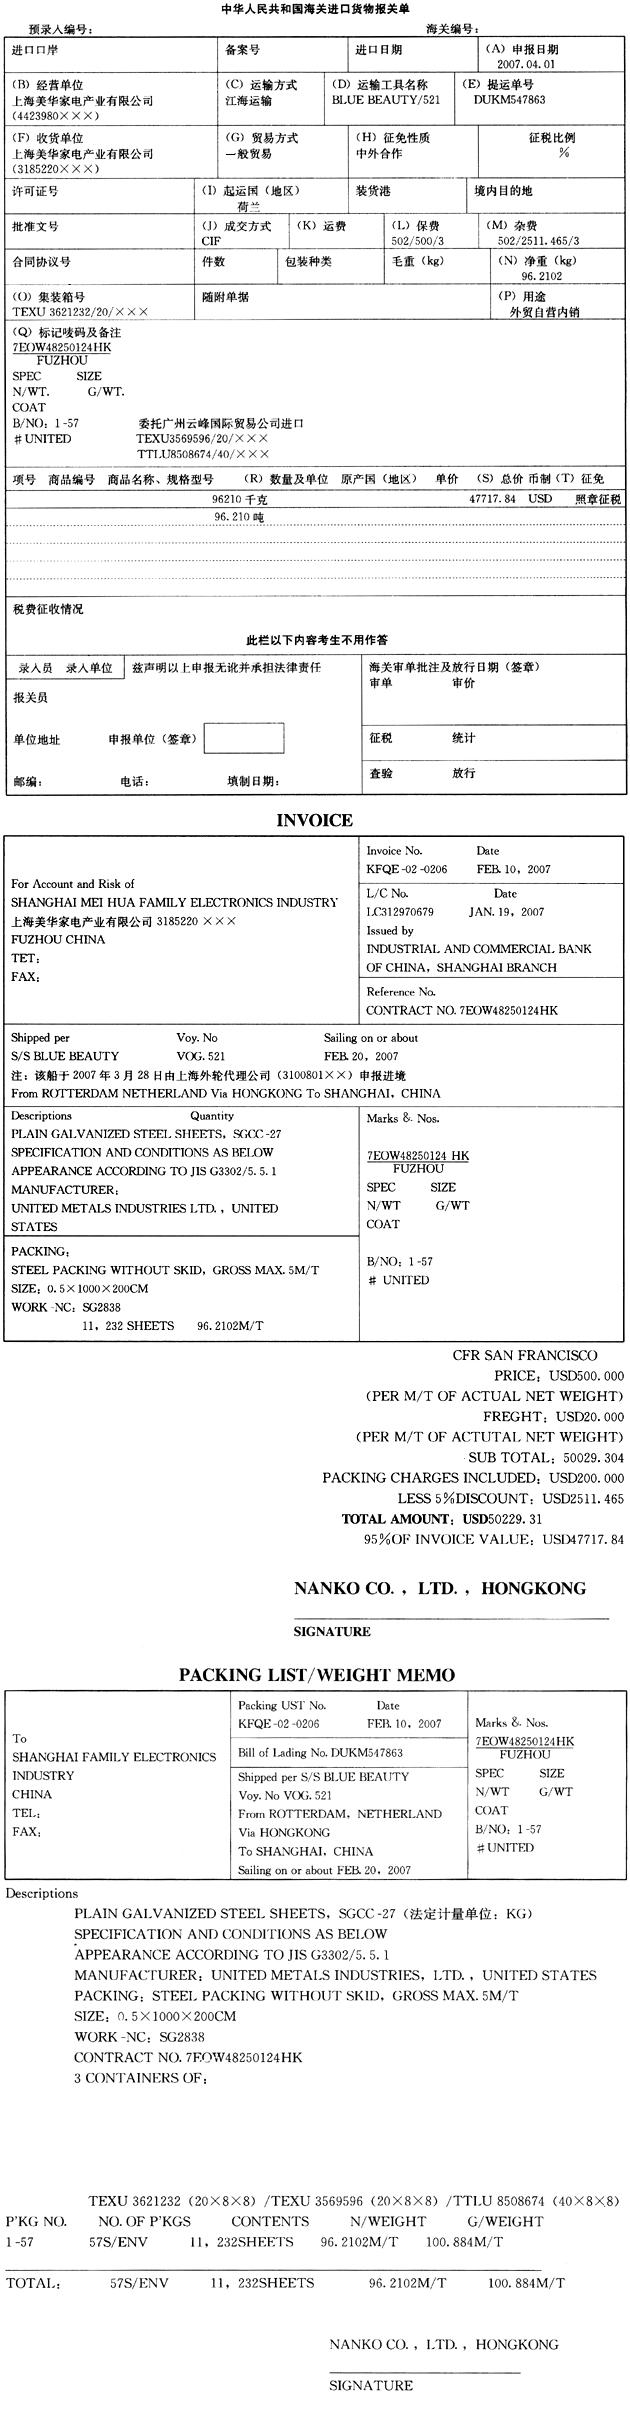 资料：上海美华家电产业有限公司（3185220×××)是一家从事冰箱生产进出口有限公司，委托广州云峰